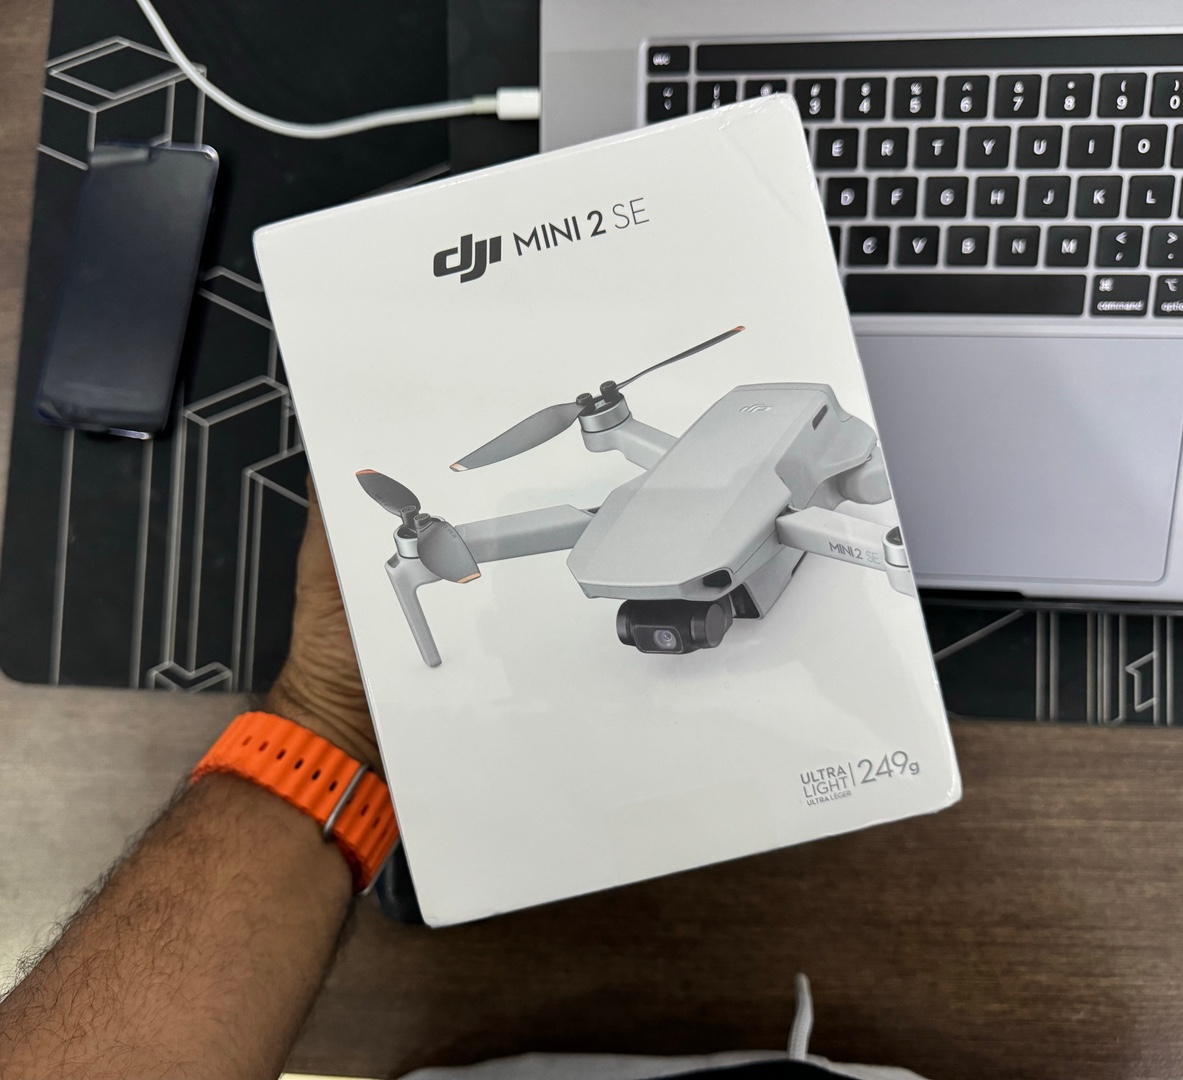 camaras y audio - Drone DJI MINI 2 SE Nuevo Sellado Completo + EXTRAS!! 0